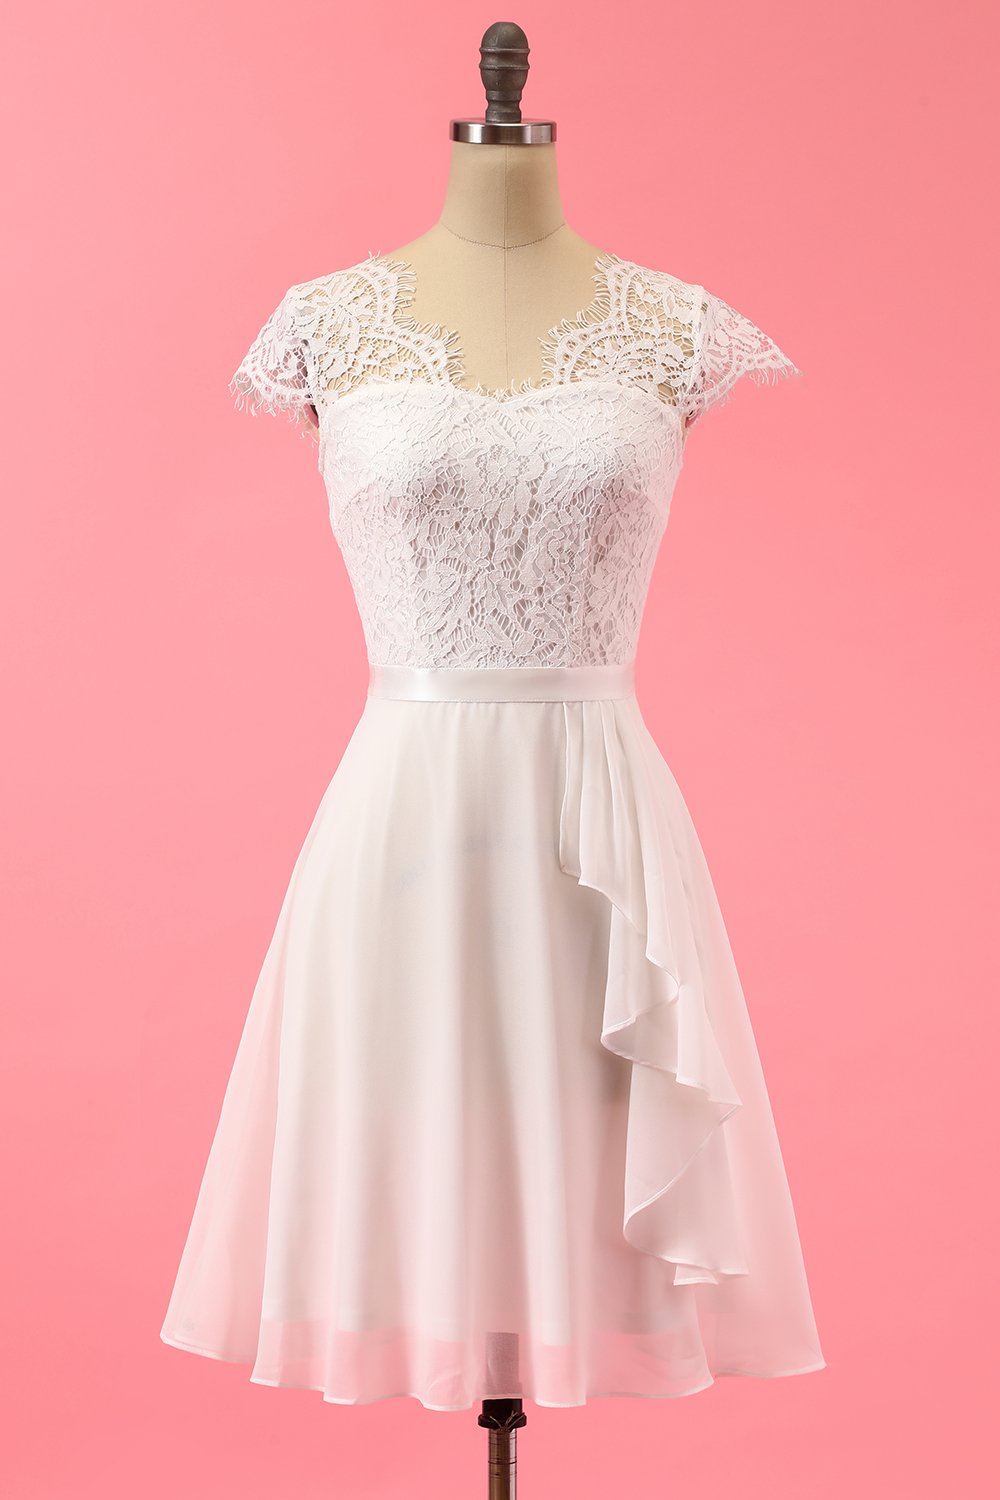 Formal Lace Ruffle Dress